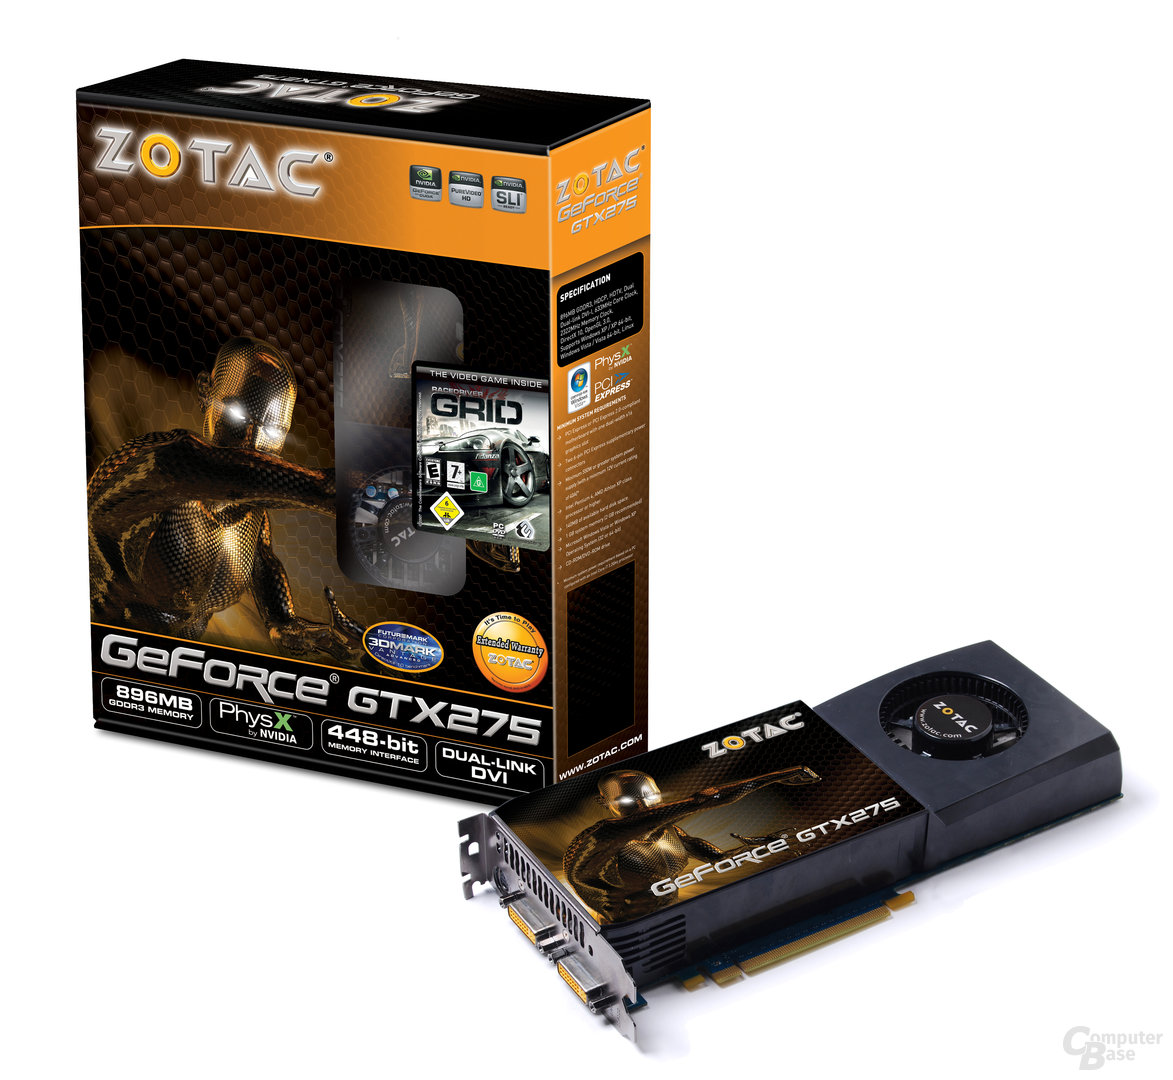 Zotac GeForce GTX 275